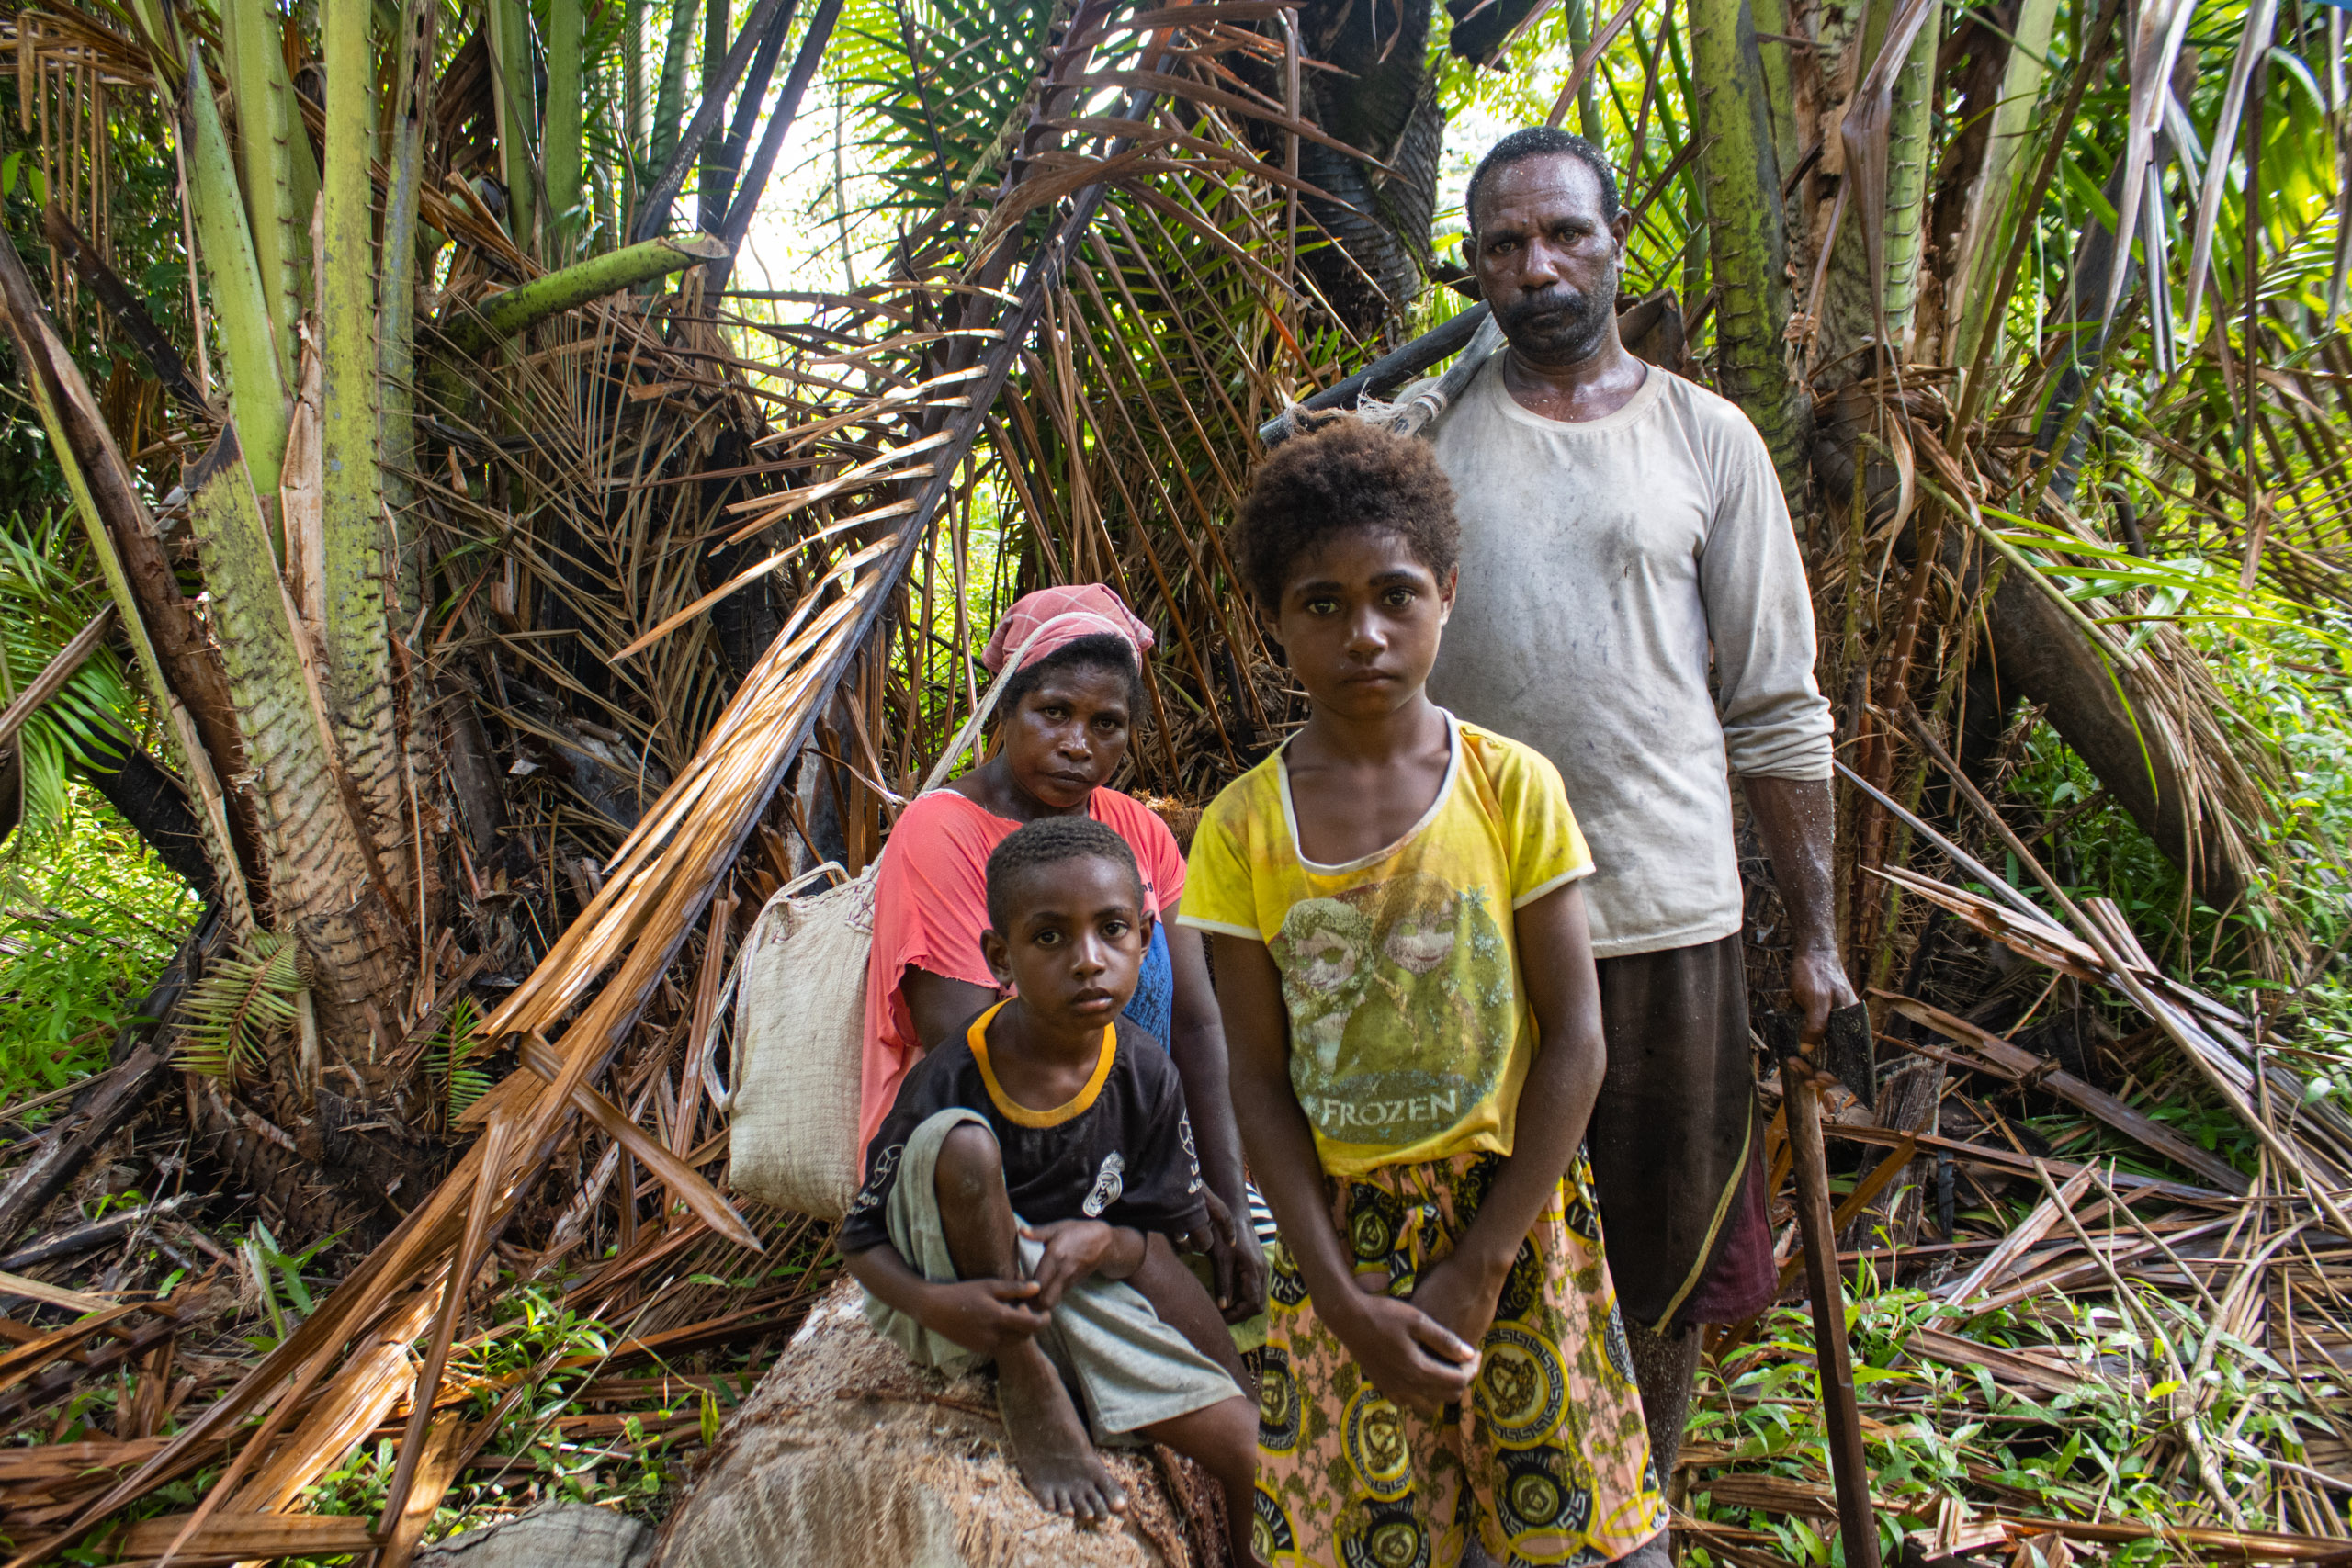 Locals with their children next to their sago palms